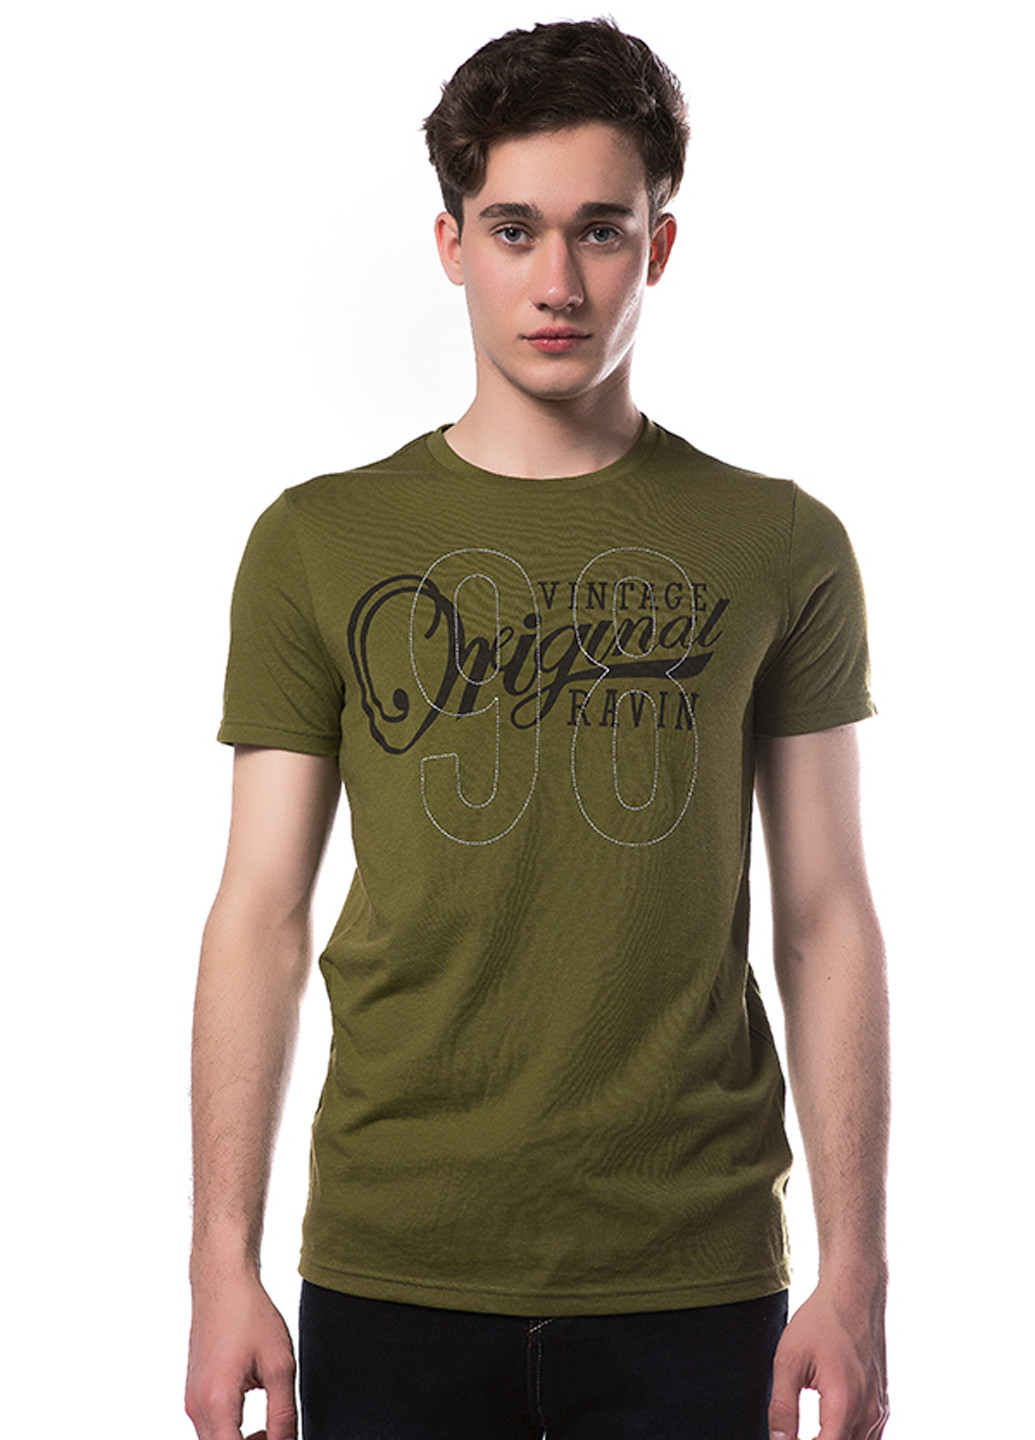 Хаки (оливковая) футболка Яavin